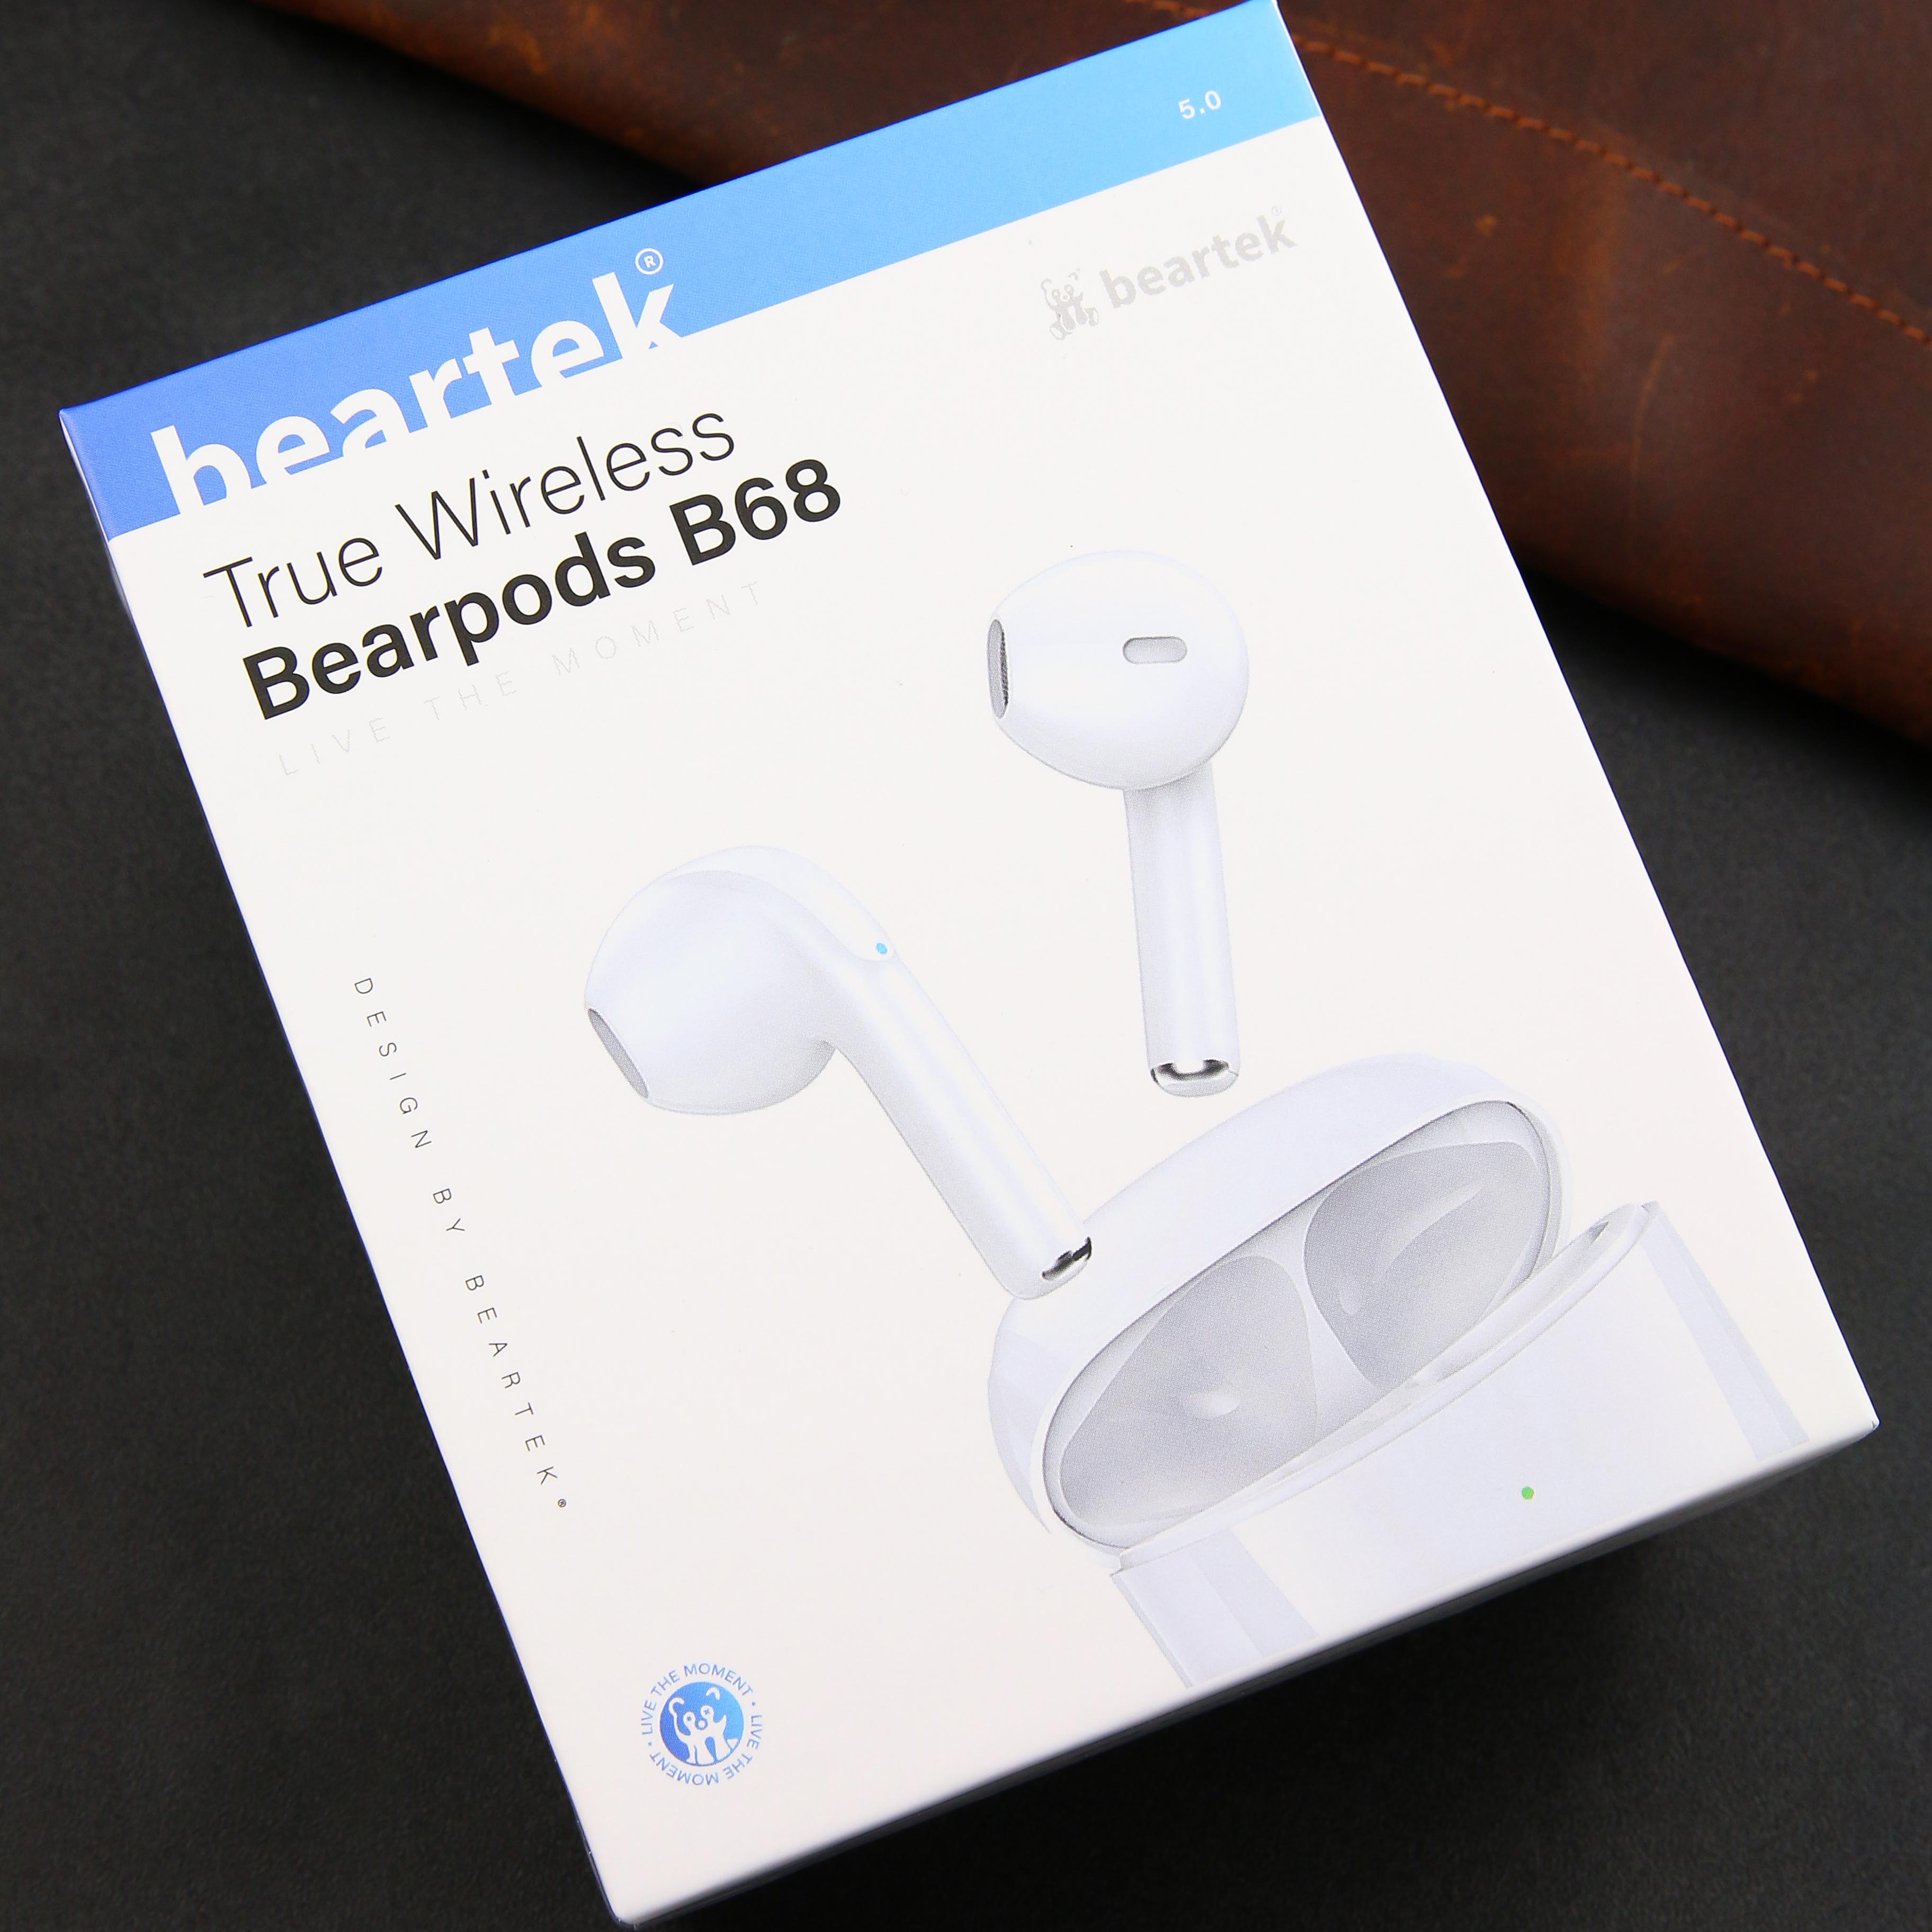 Tai nghe bluetooth không dây Beartek Bearpods B68 – Chạm cảm ứng – Âm thanh chất lượng cao – Hàng chính hãng